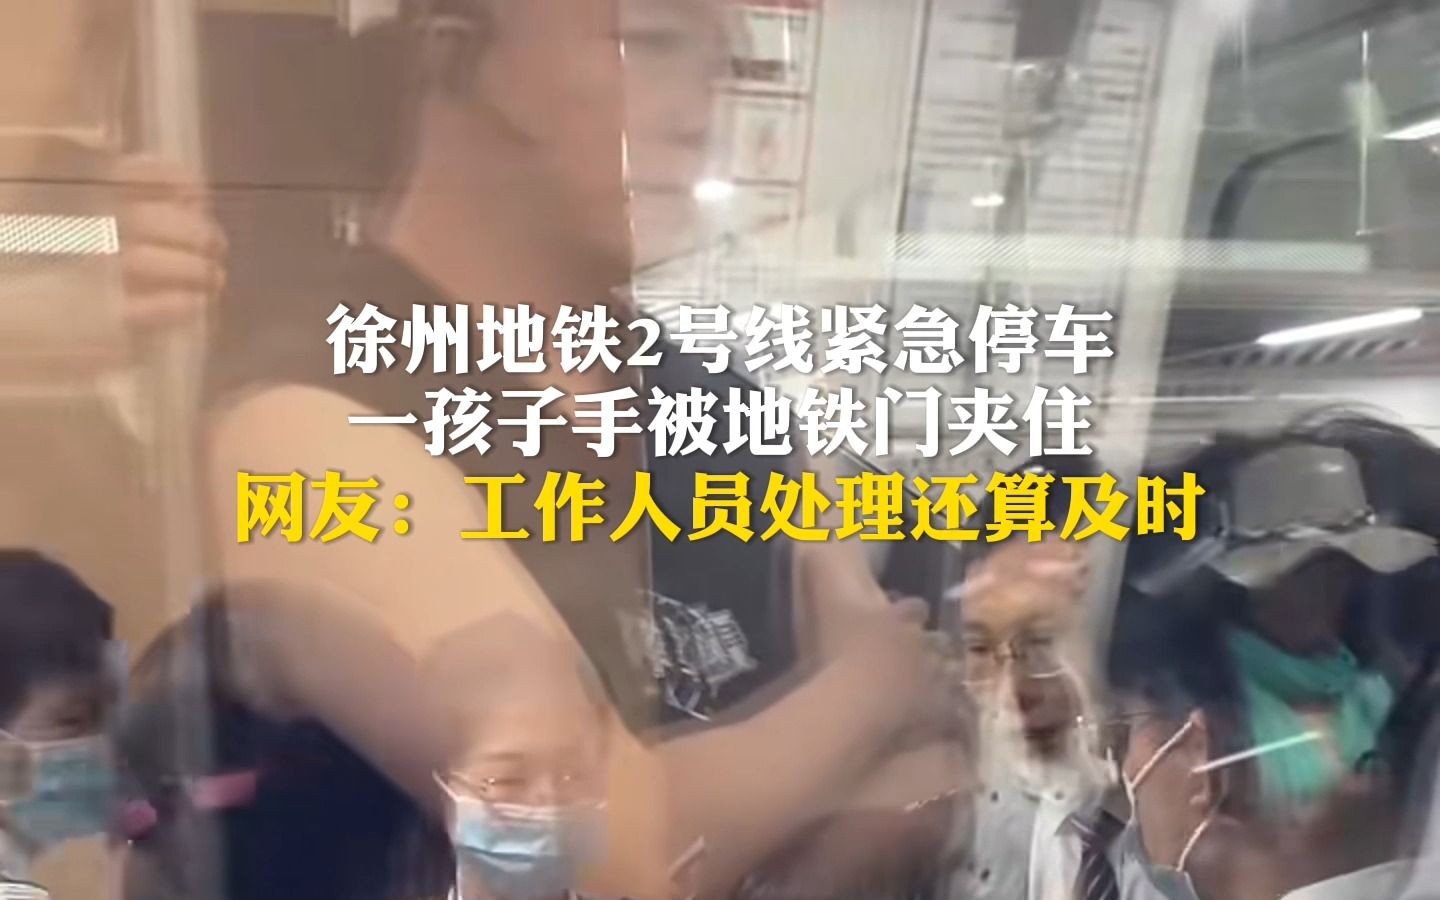 徐州地铁2号线紧急停车，一孩子手被地铁门夹住